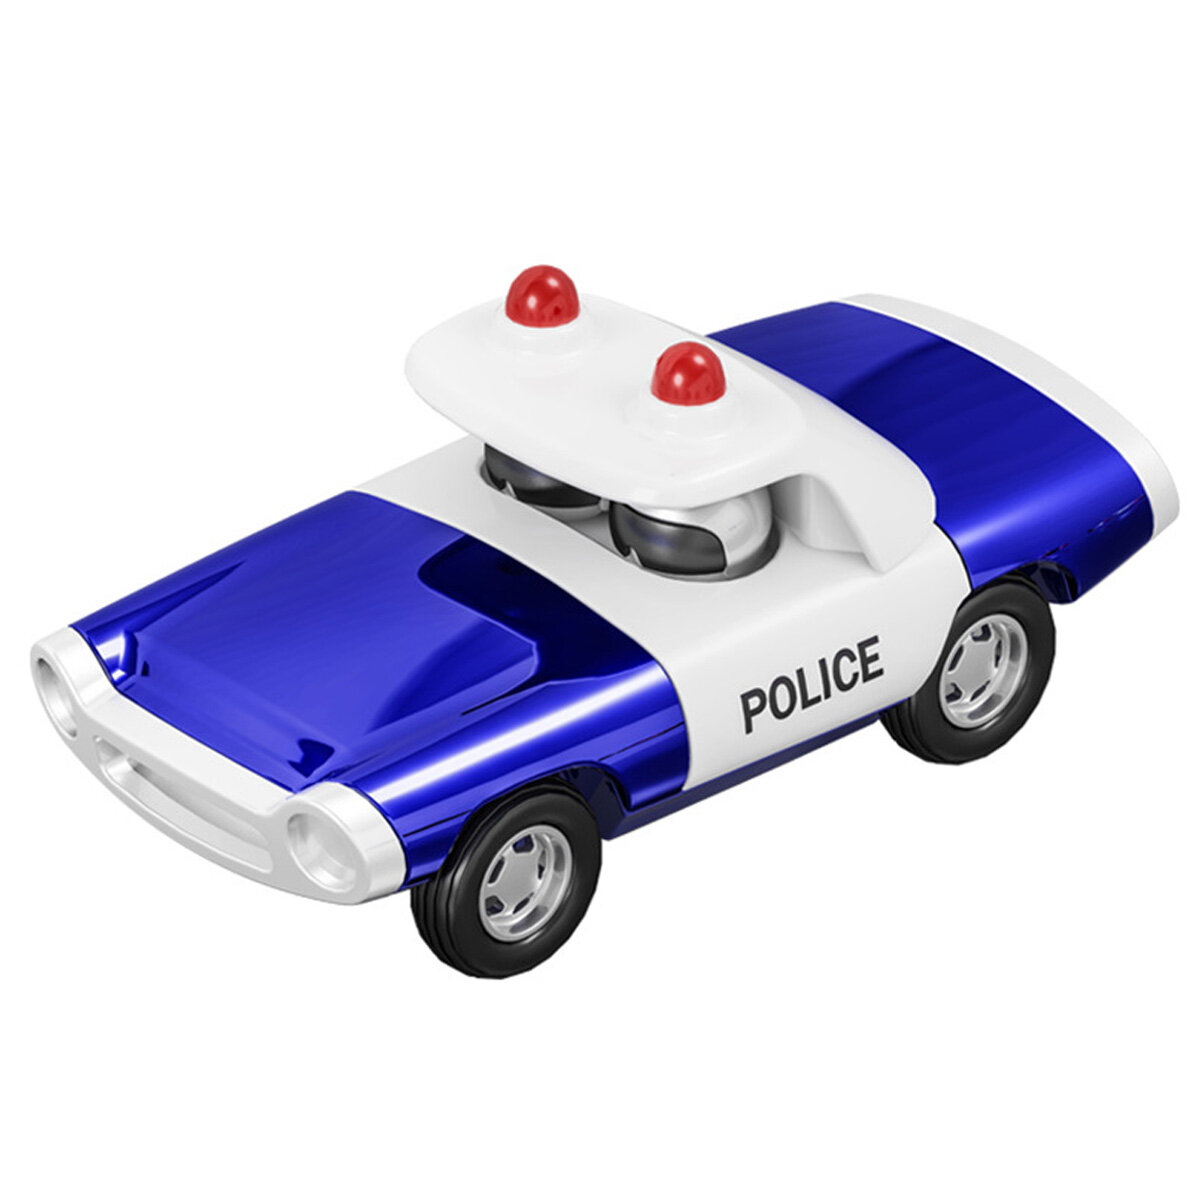 Legering politie trek gegoten auto model speelgoed voor cadeau collectie woondecoratie